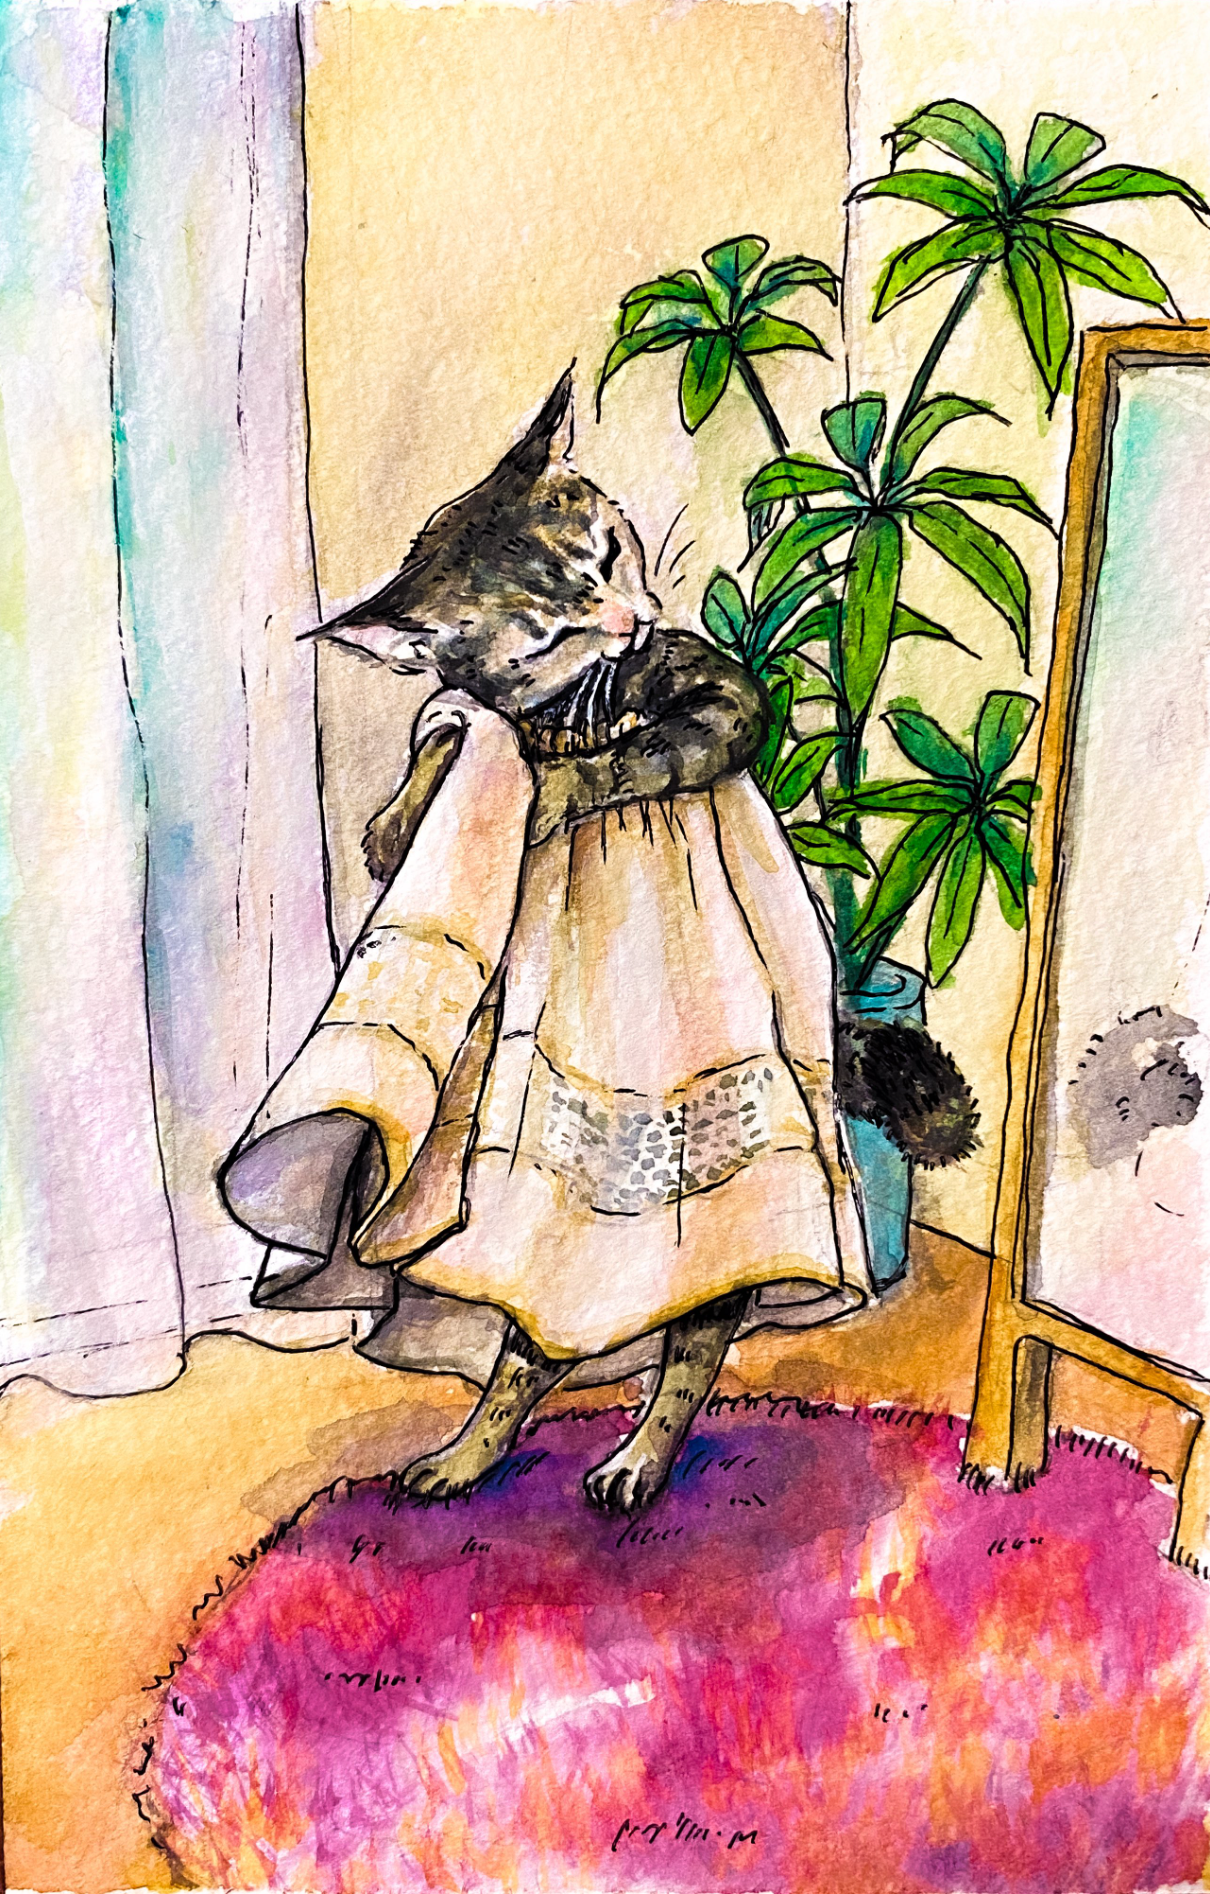 fanart แฟนอาร์ต แมวเล่นผ้าม่าน ใส่ชุดกระโปรง